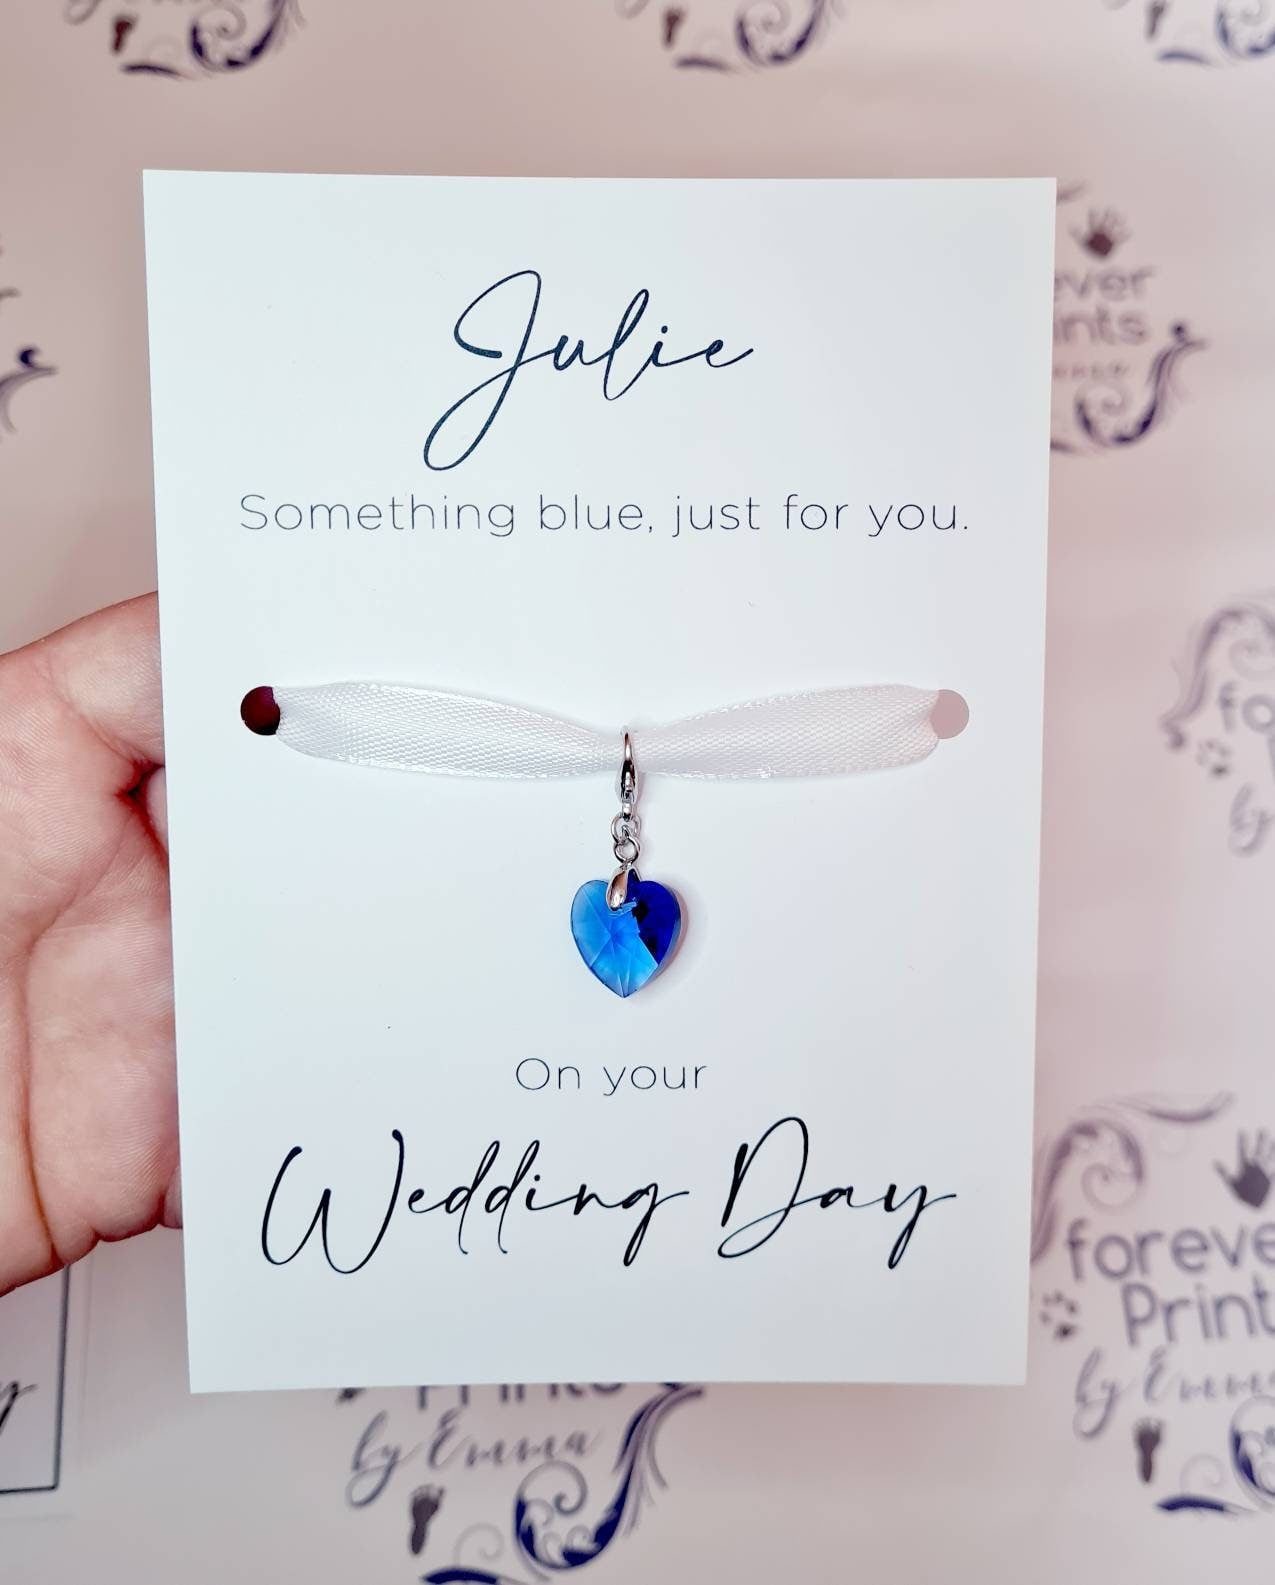 Something New, Something Blue - Wedding Day Gift Ideas